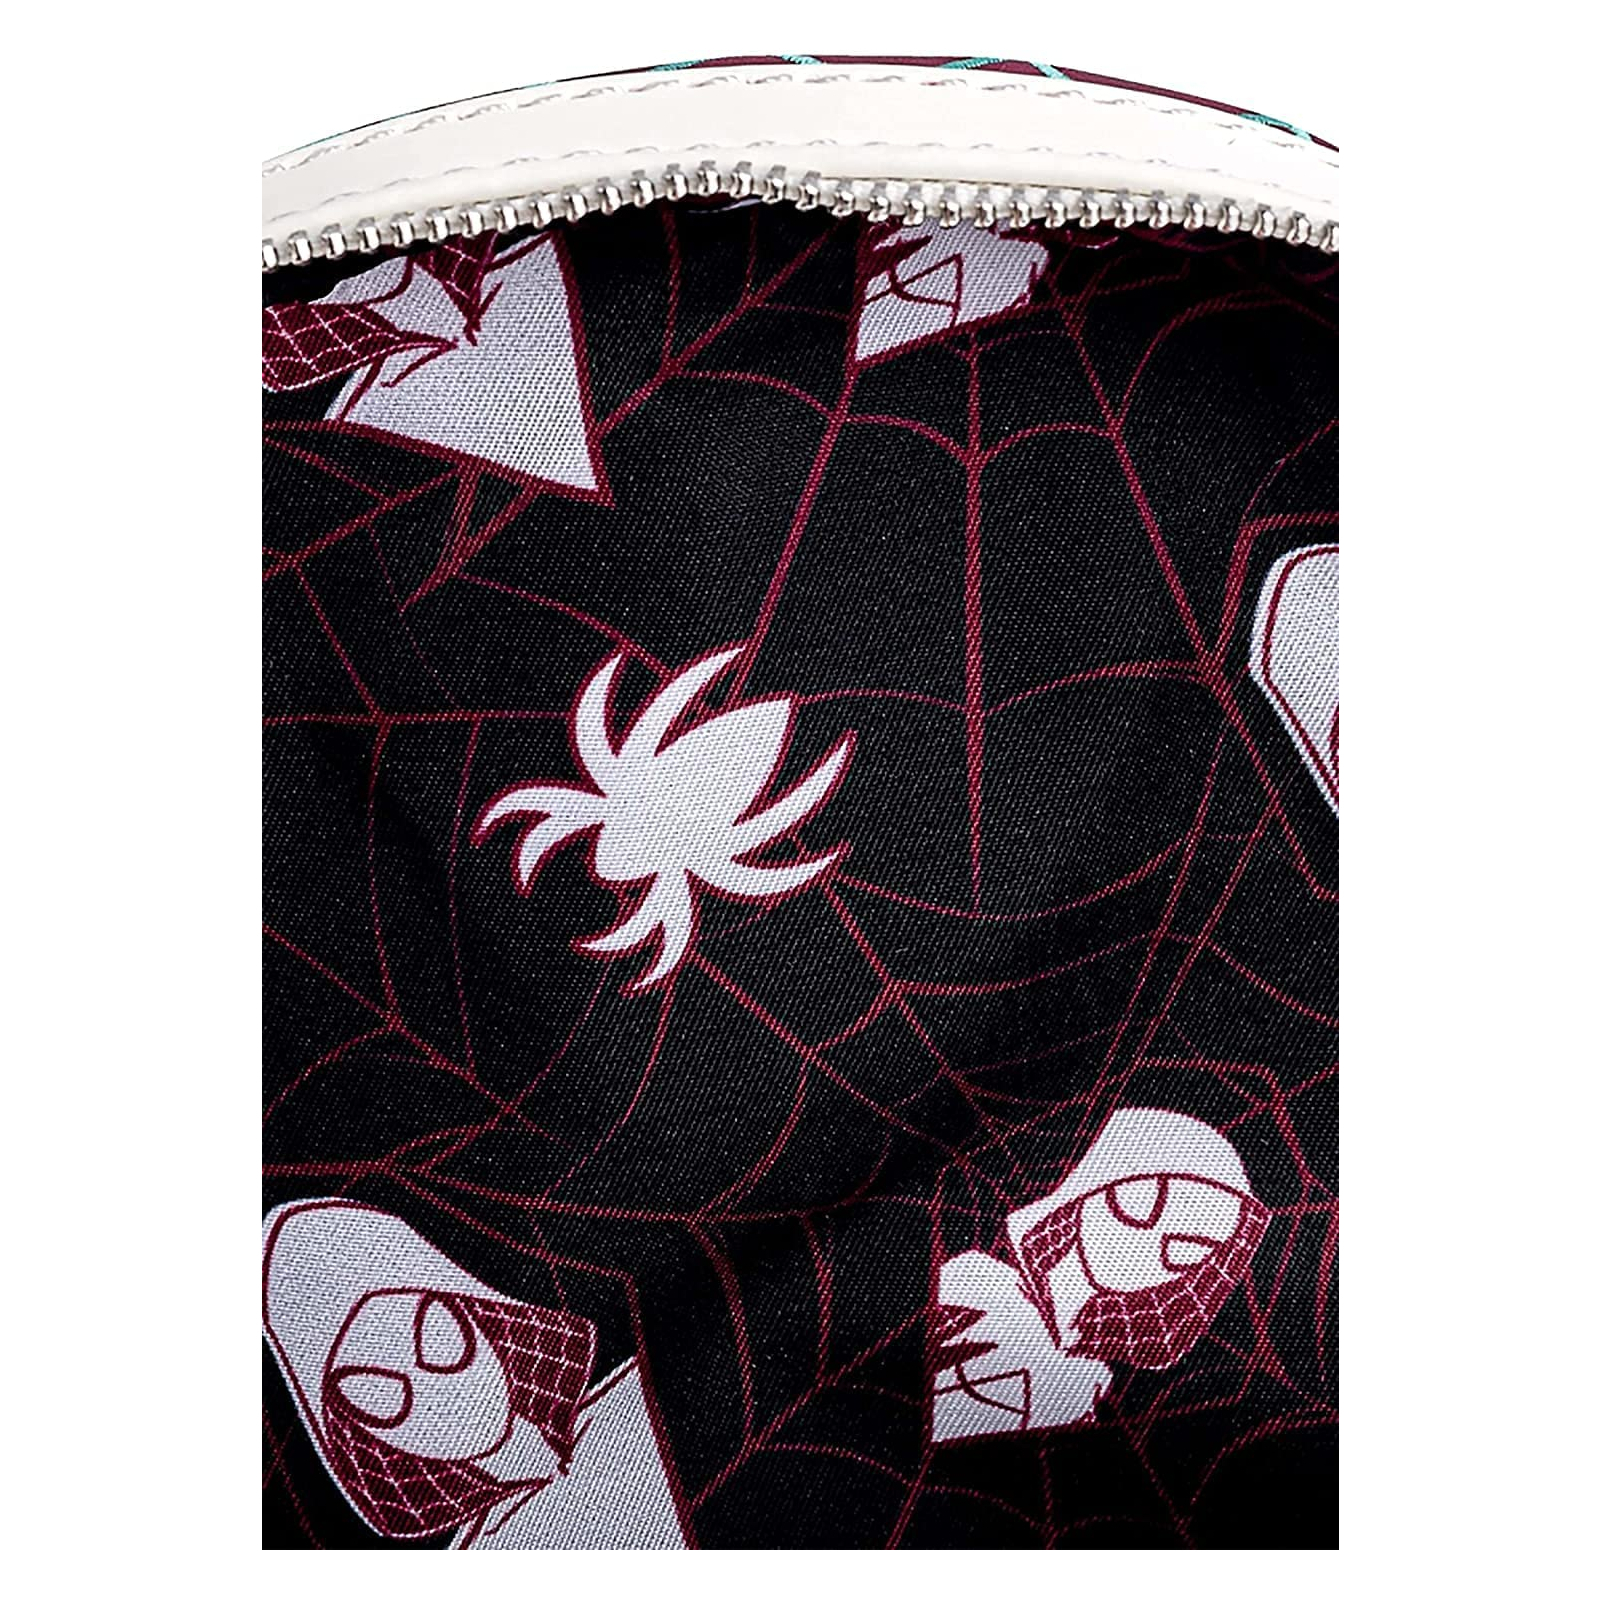 Рюкзак школьный Loungefly Marvel - Spider Gwen Cosplay Mini Backpack (MVBK0151) изображение 4